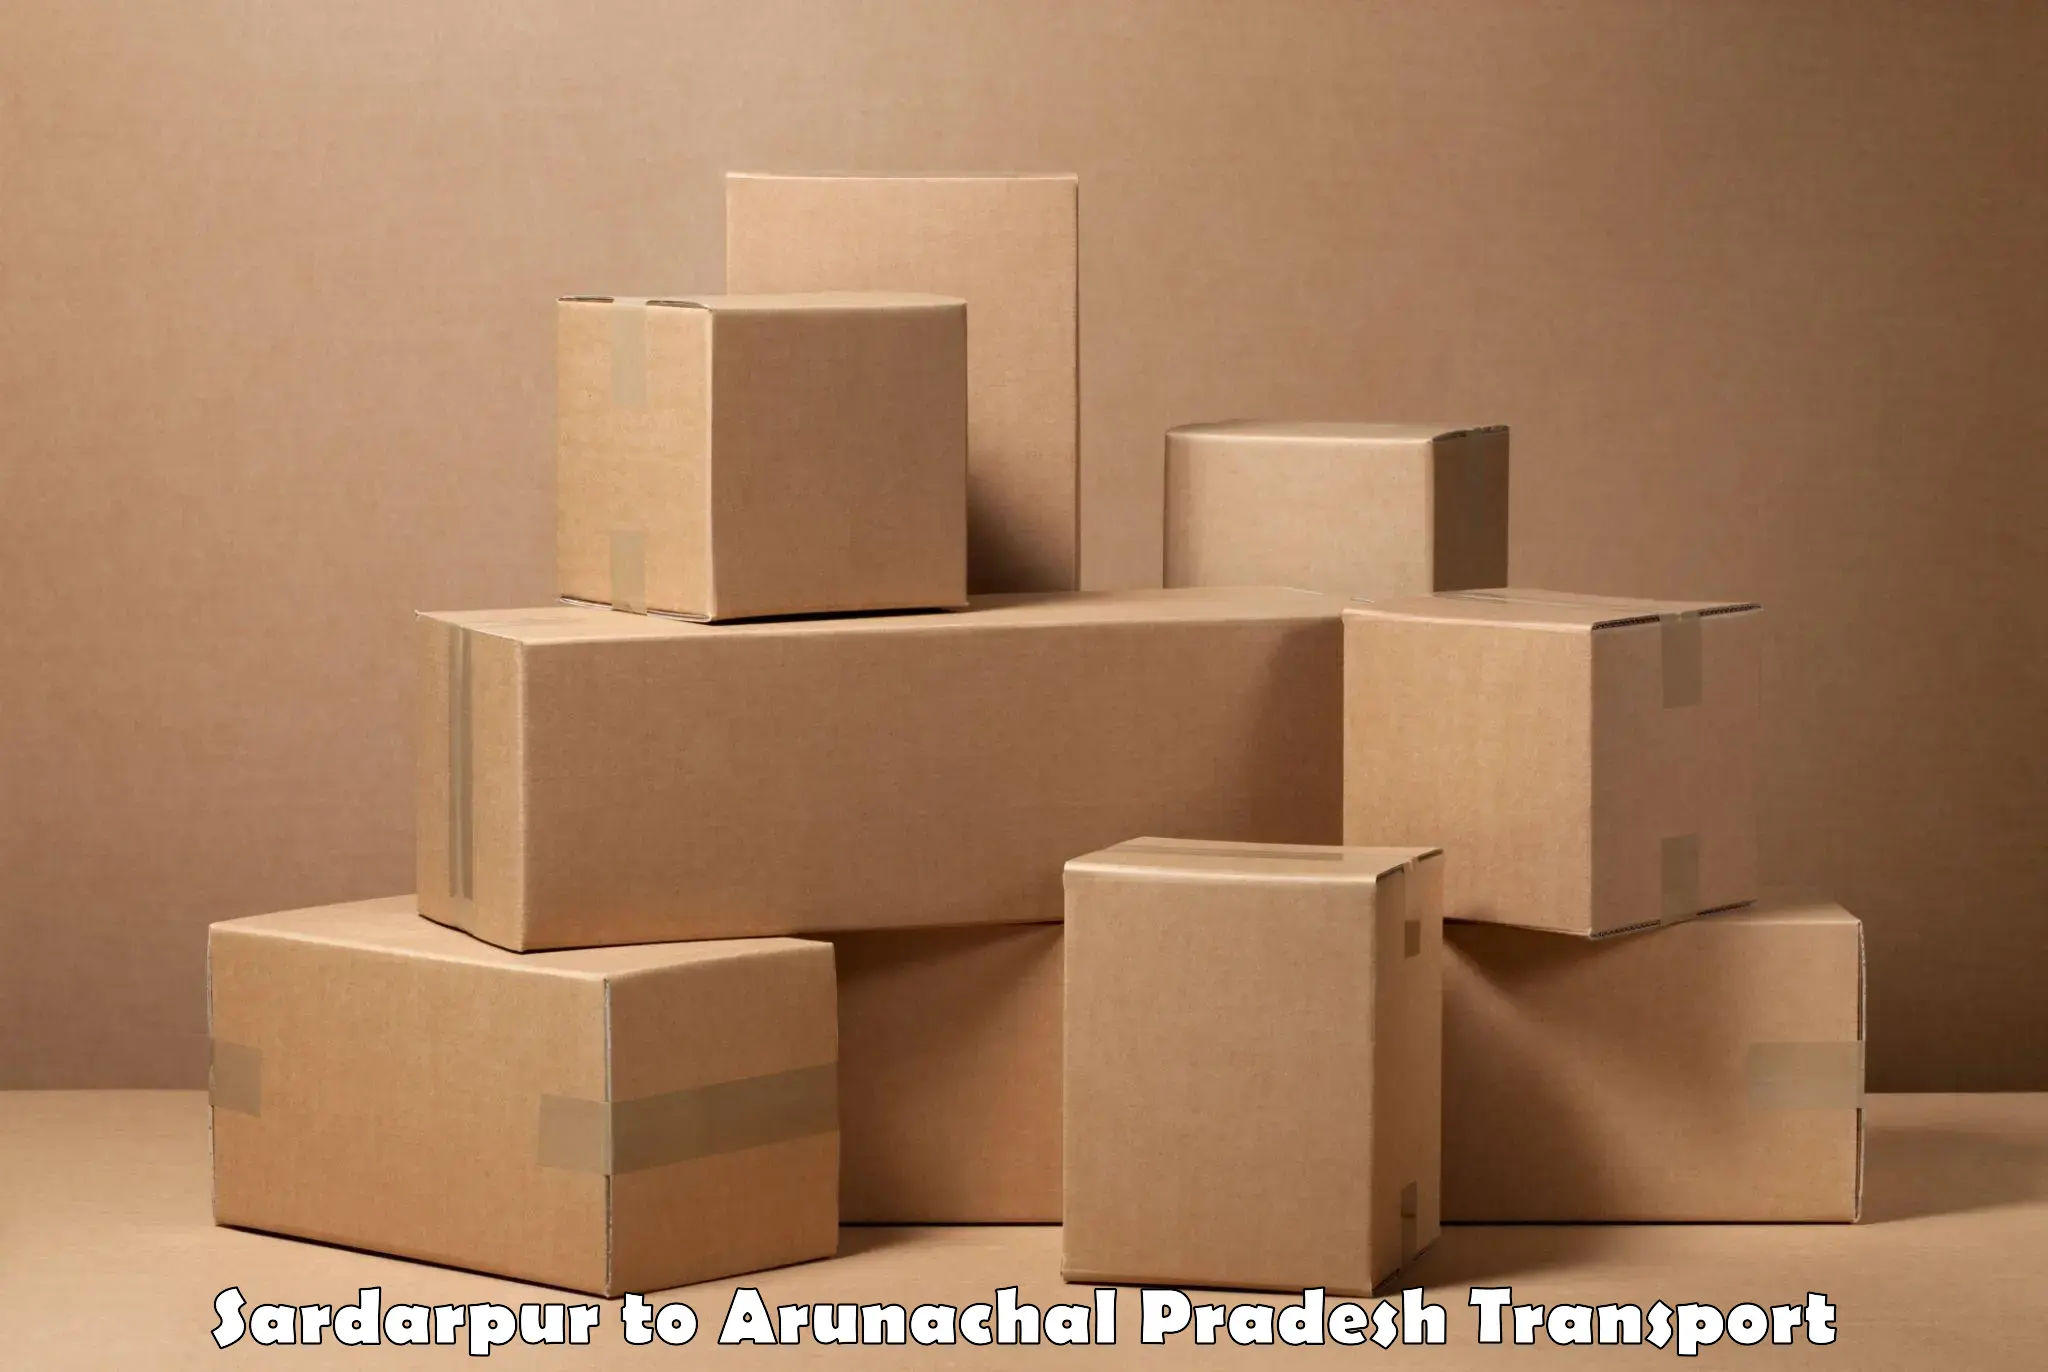 Furniture transport service Sardarpur to Lohit